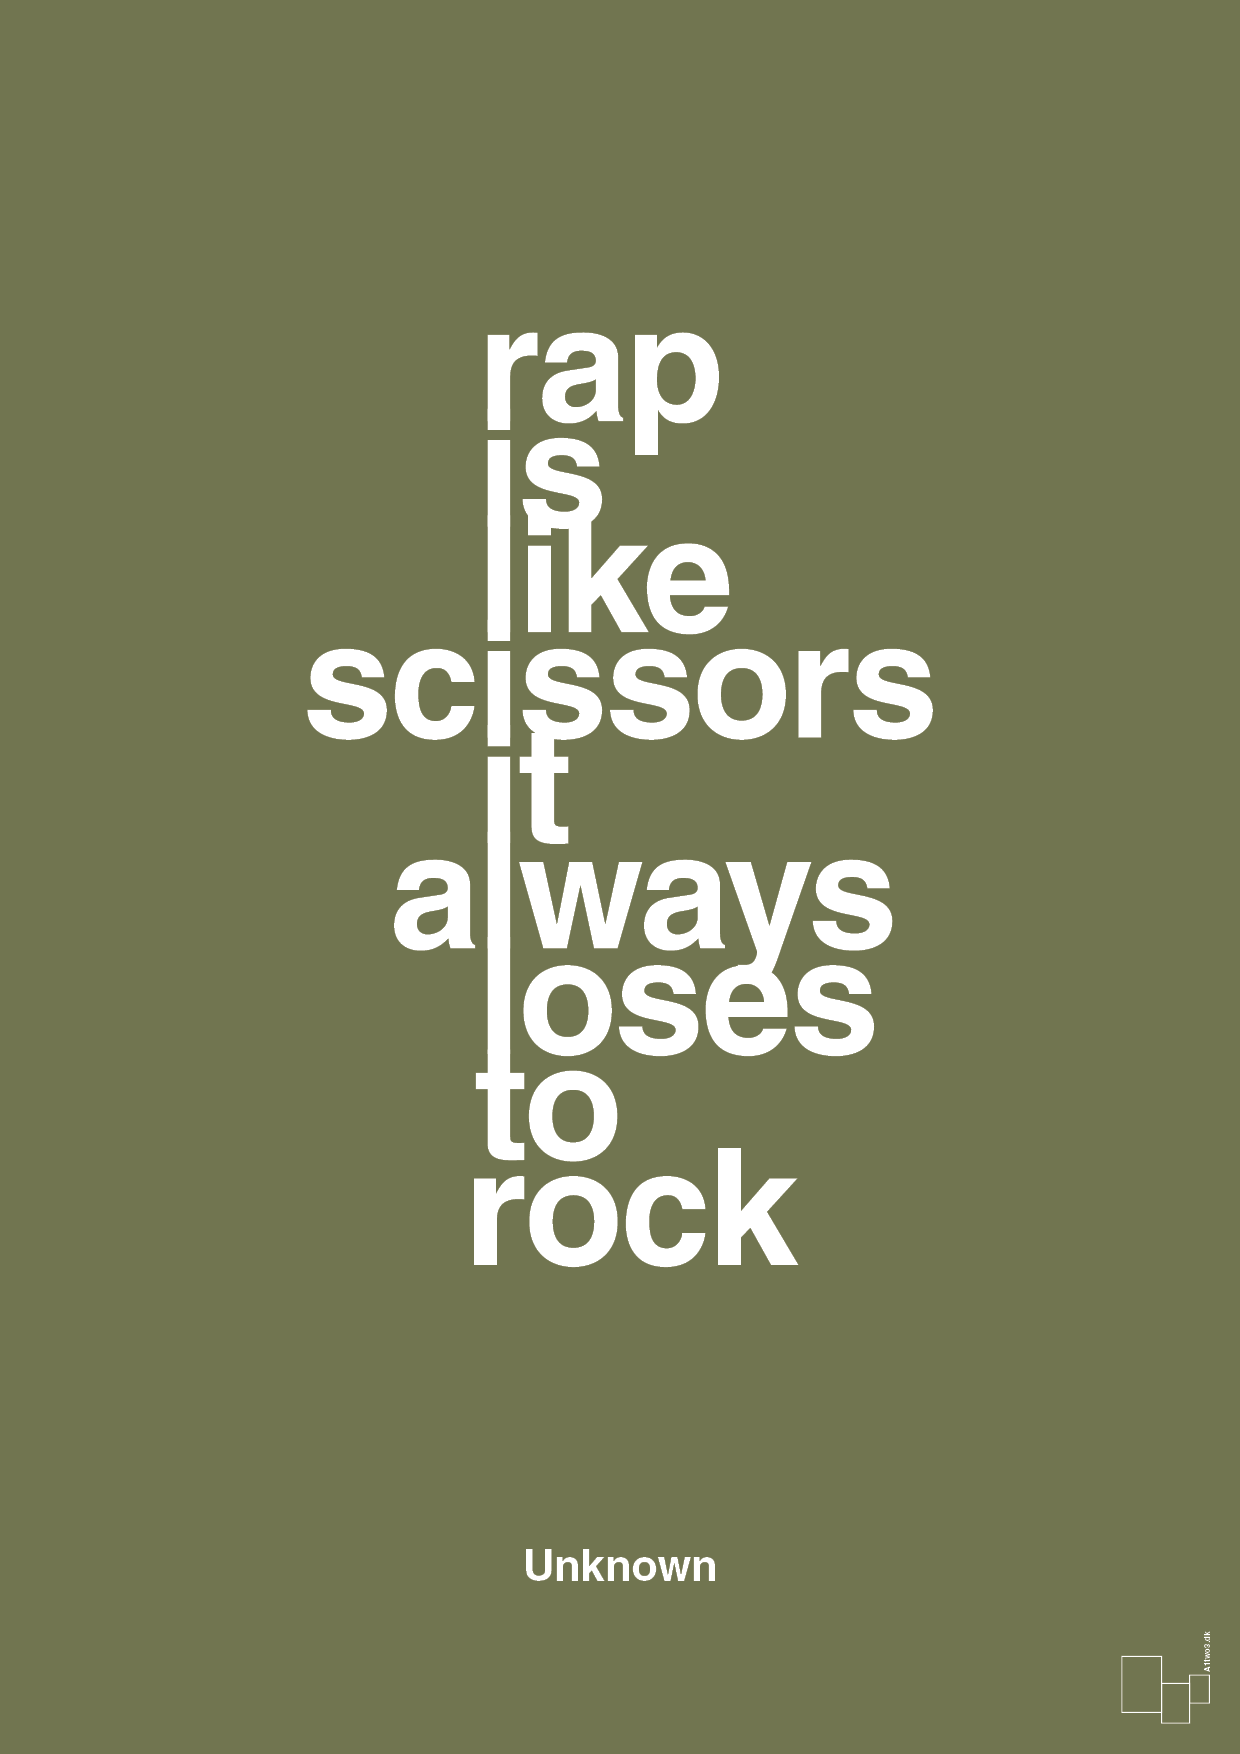 rap is like scissors it always loses to rock - Plakat med Citater i Secret Meadow